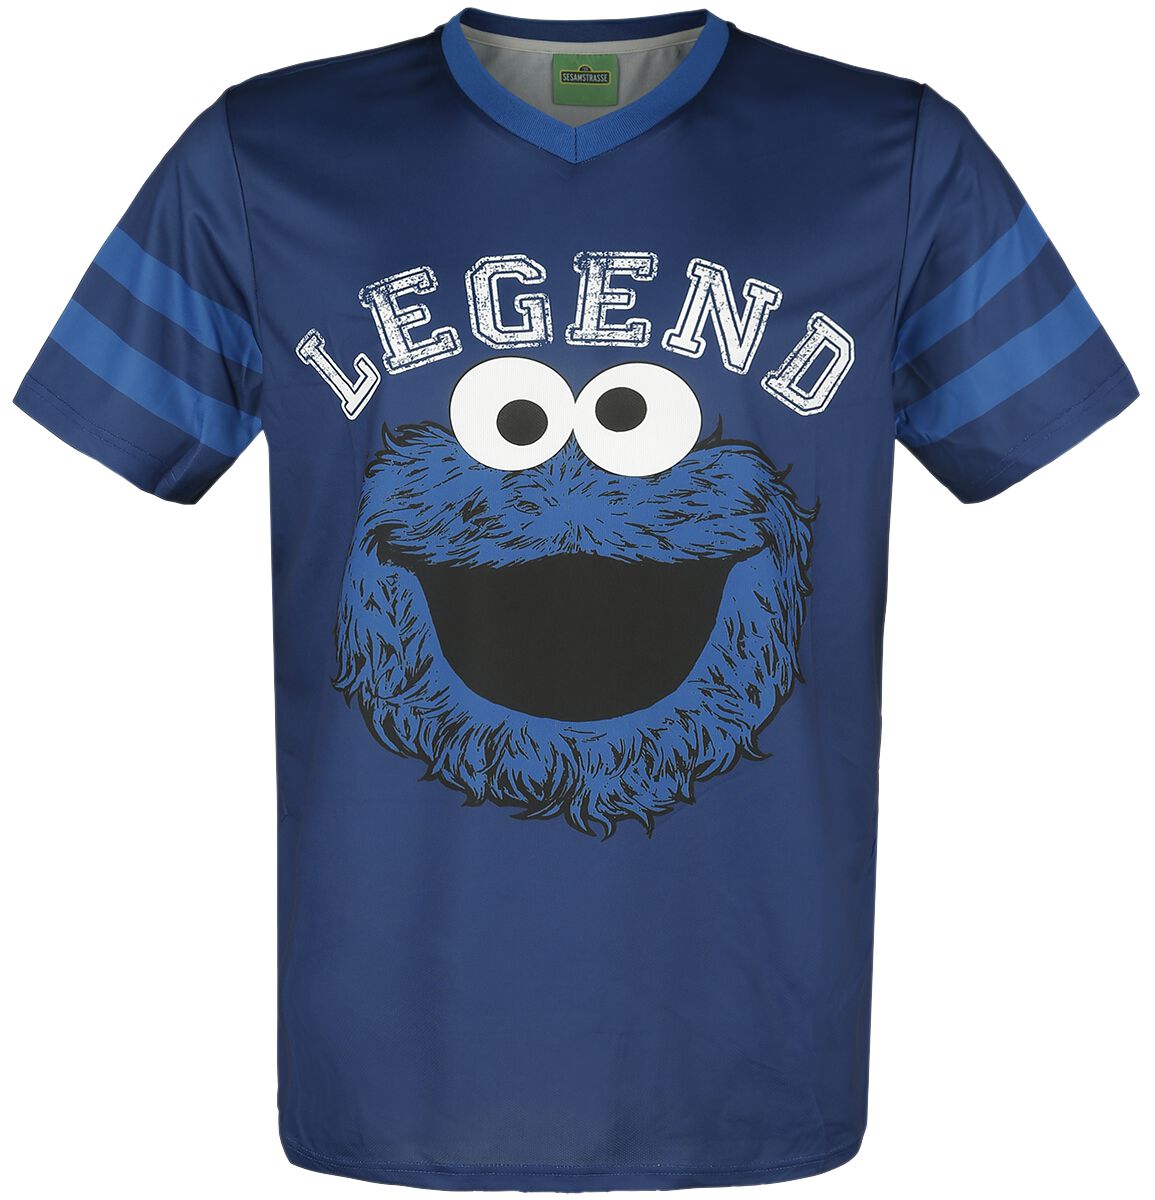 Sesame Street Legend Jersey blue